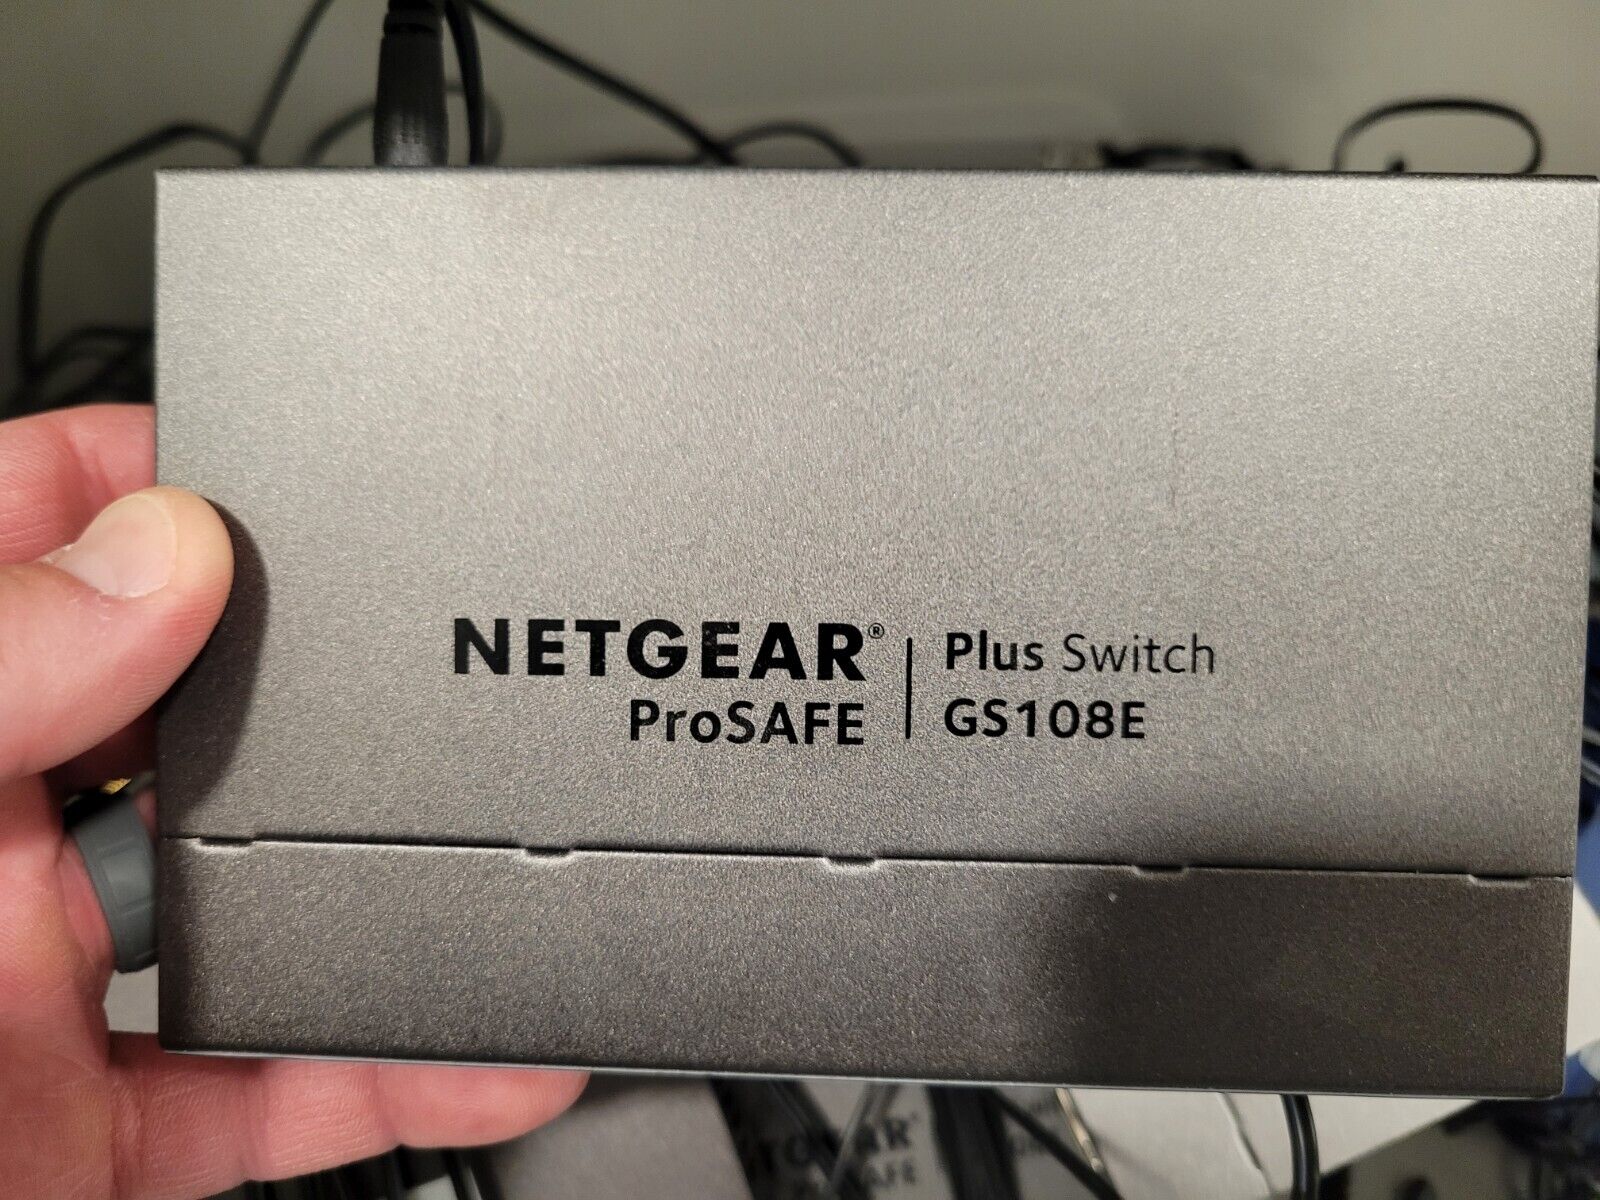 Netgear GS108Ev3 GS108E ProSafe Plus 8 Gigabit Ethernet Switch